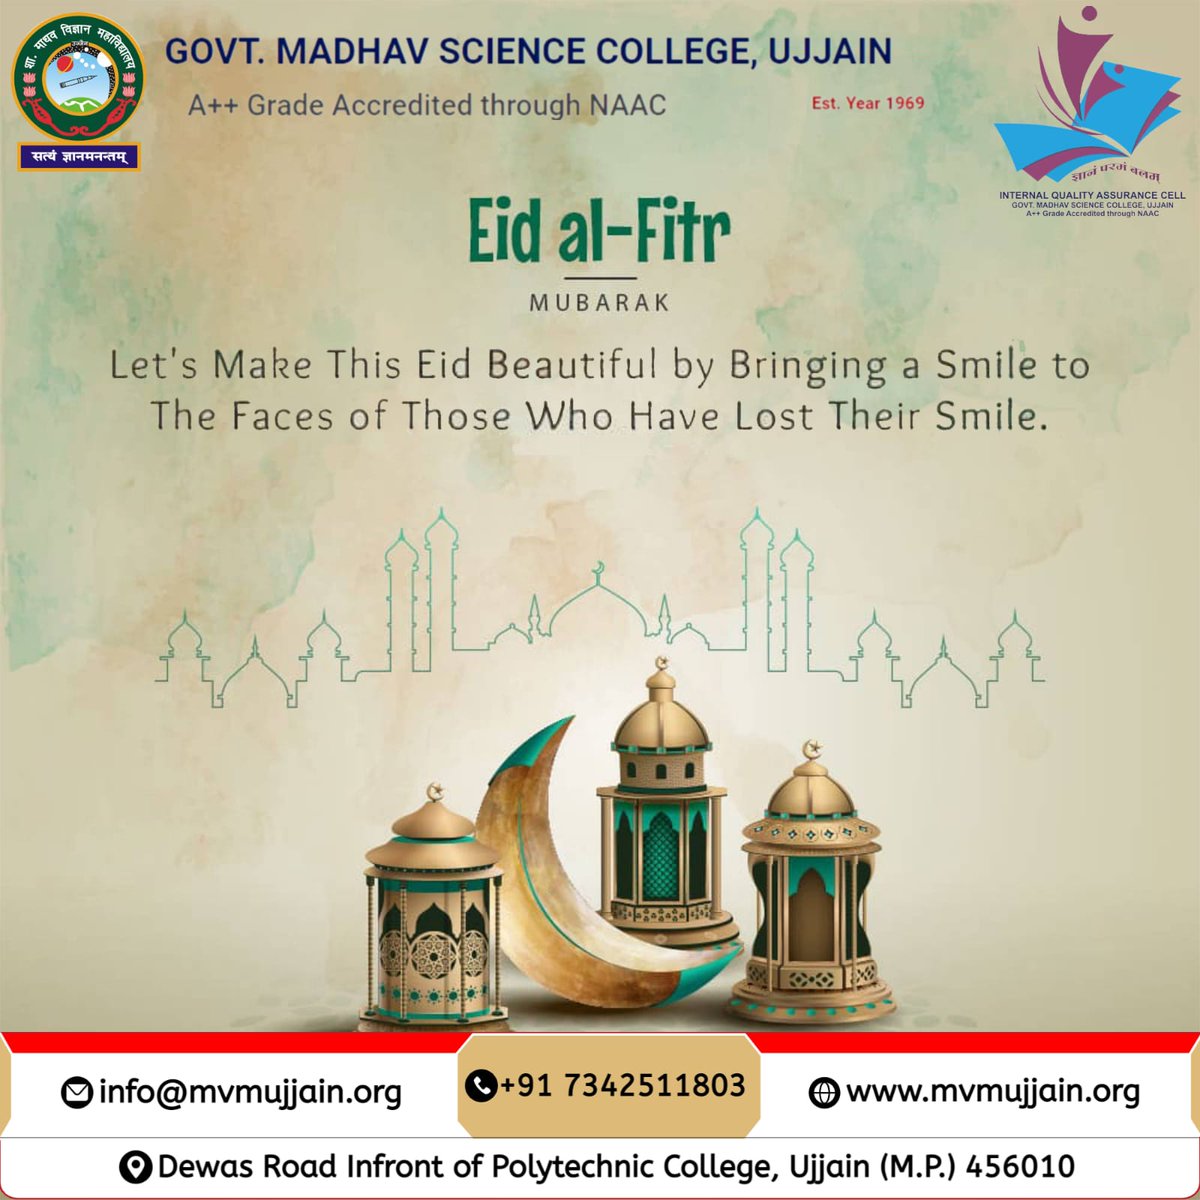 Greetings from Govt. Madhav Science College Ujjain  
 #EidMubarak #EidAlFitr #HappyEid #BlessedEid #EidCelebrations #EidJoy #EidFamilyTime #EidTraditions #EidFestivities #EidFood #EidShopping #EidPrayers #EidGifts #EidGreetings #EidLove #EidHappiness #EidSpirit #EidReflection